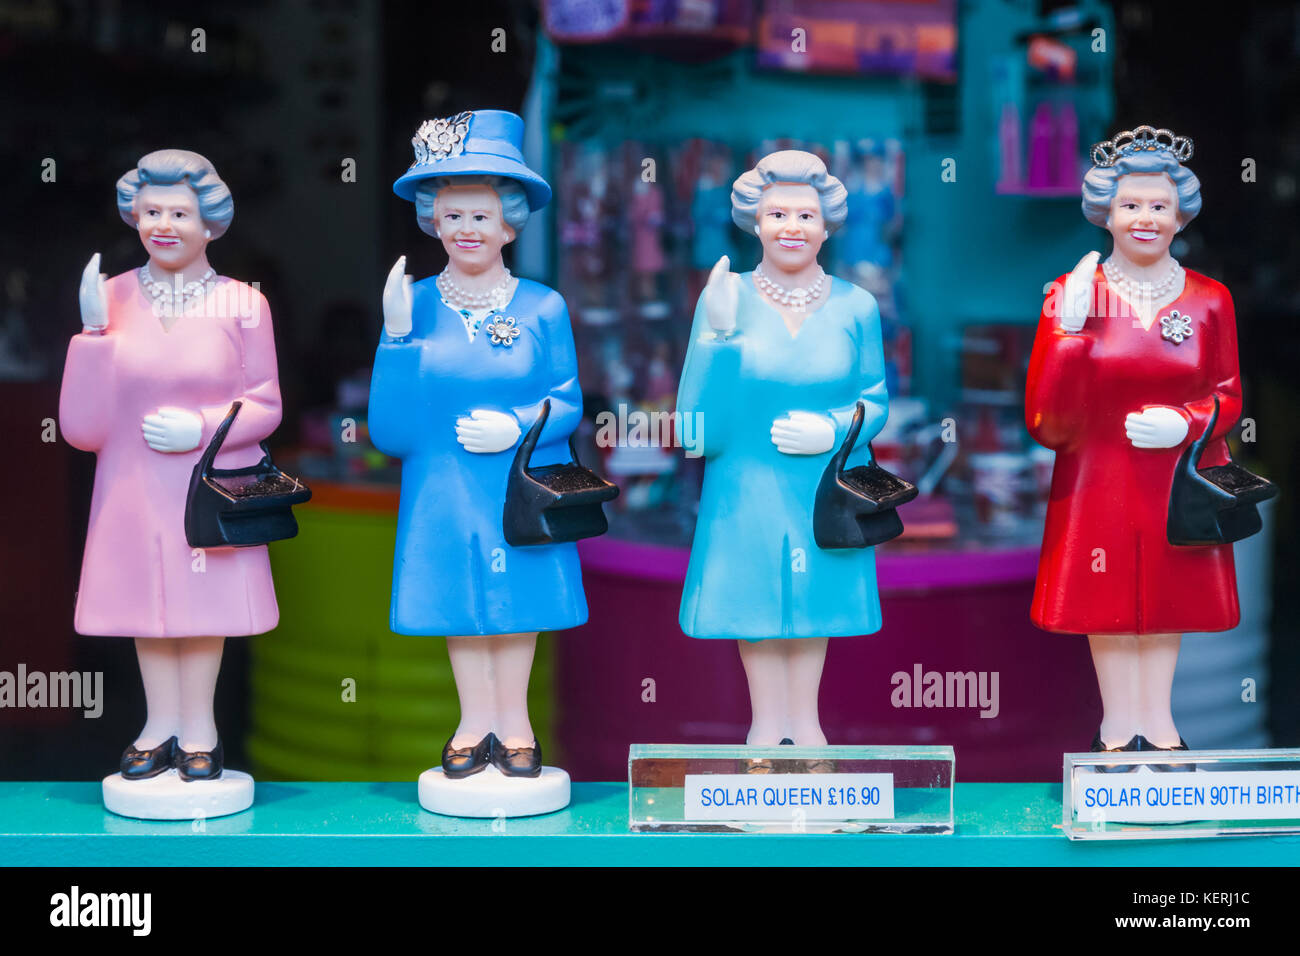 Inghilterra, Londra, Nottinghill, Portobello Road, Souvenir Shop visualizzazione dei modelli di Queen Elizabeth II Foto Stock